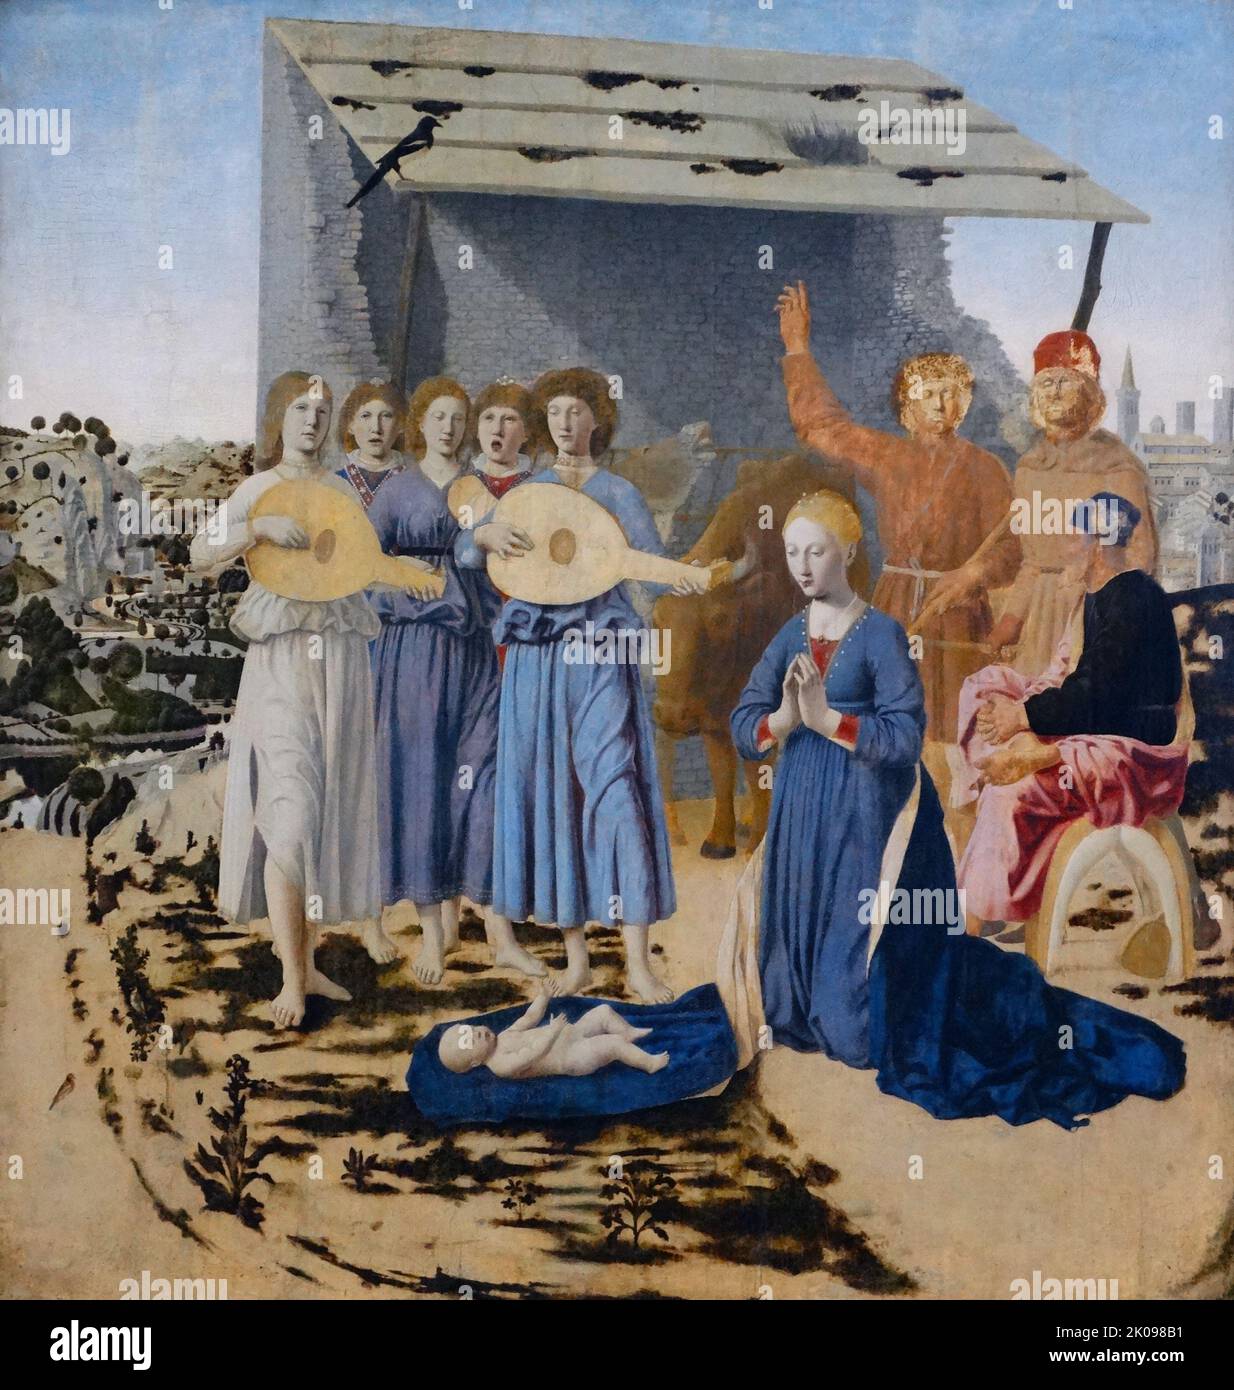 Die Geburt von Piero del Fransesca. Die Geburt Christi ist ein Ölgemälde des italienischen Künstlers Piero della Francesco, datiert auf 1470-75. Das Gemälde zeigt eine Szene aus der Geburt Jesu und ist eines der neuesten erhaltenen Gemälde des Künstlers vor seinem Tod im Jahr 1492. Stockfoto